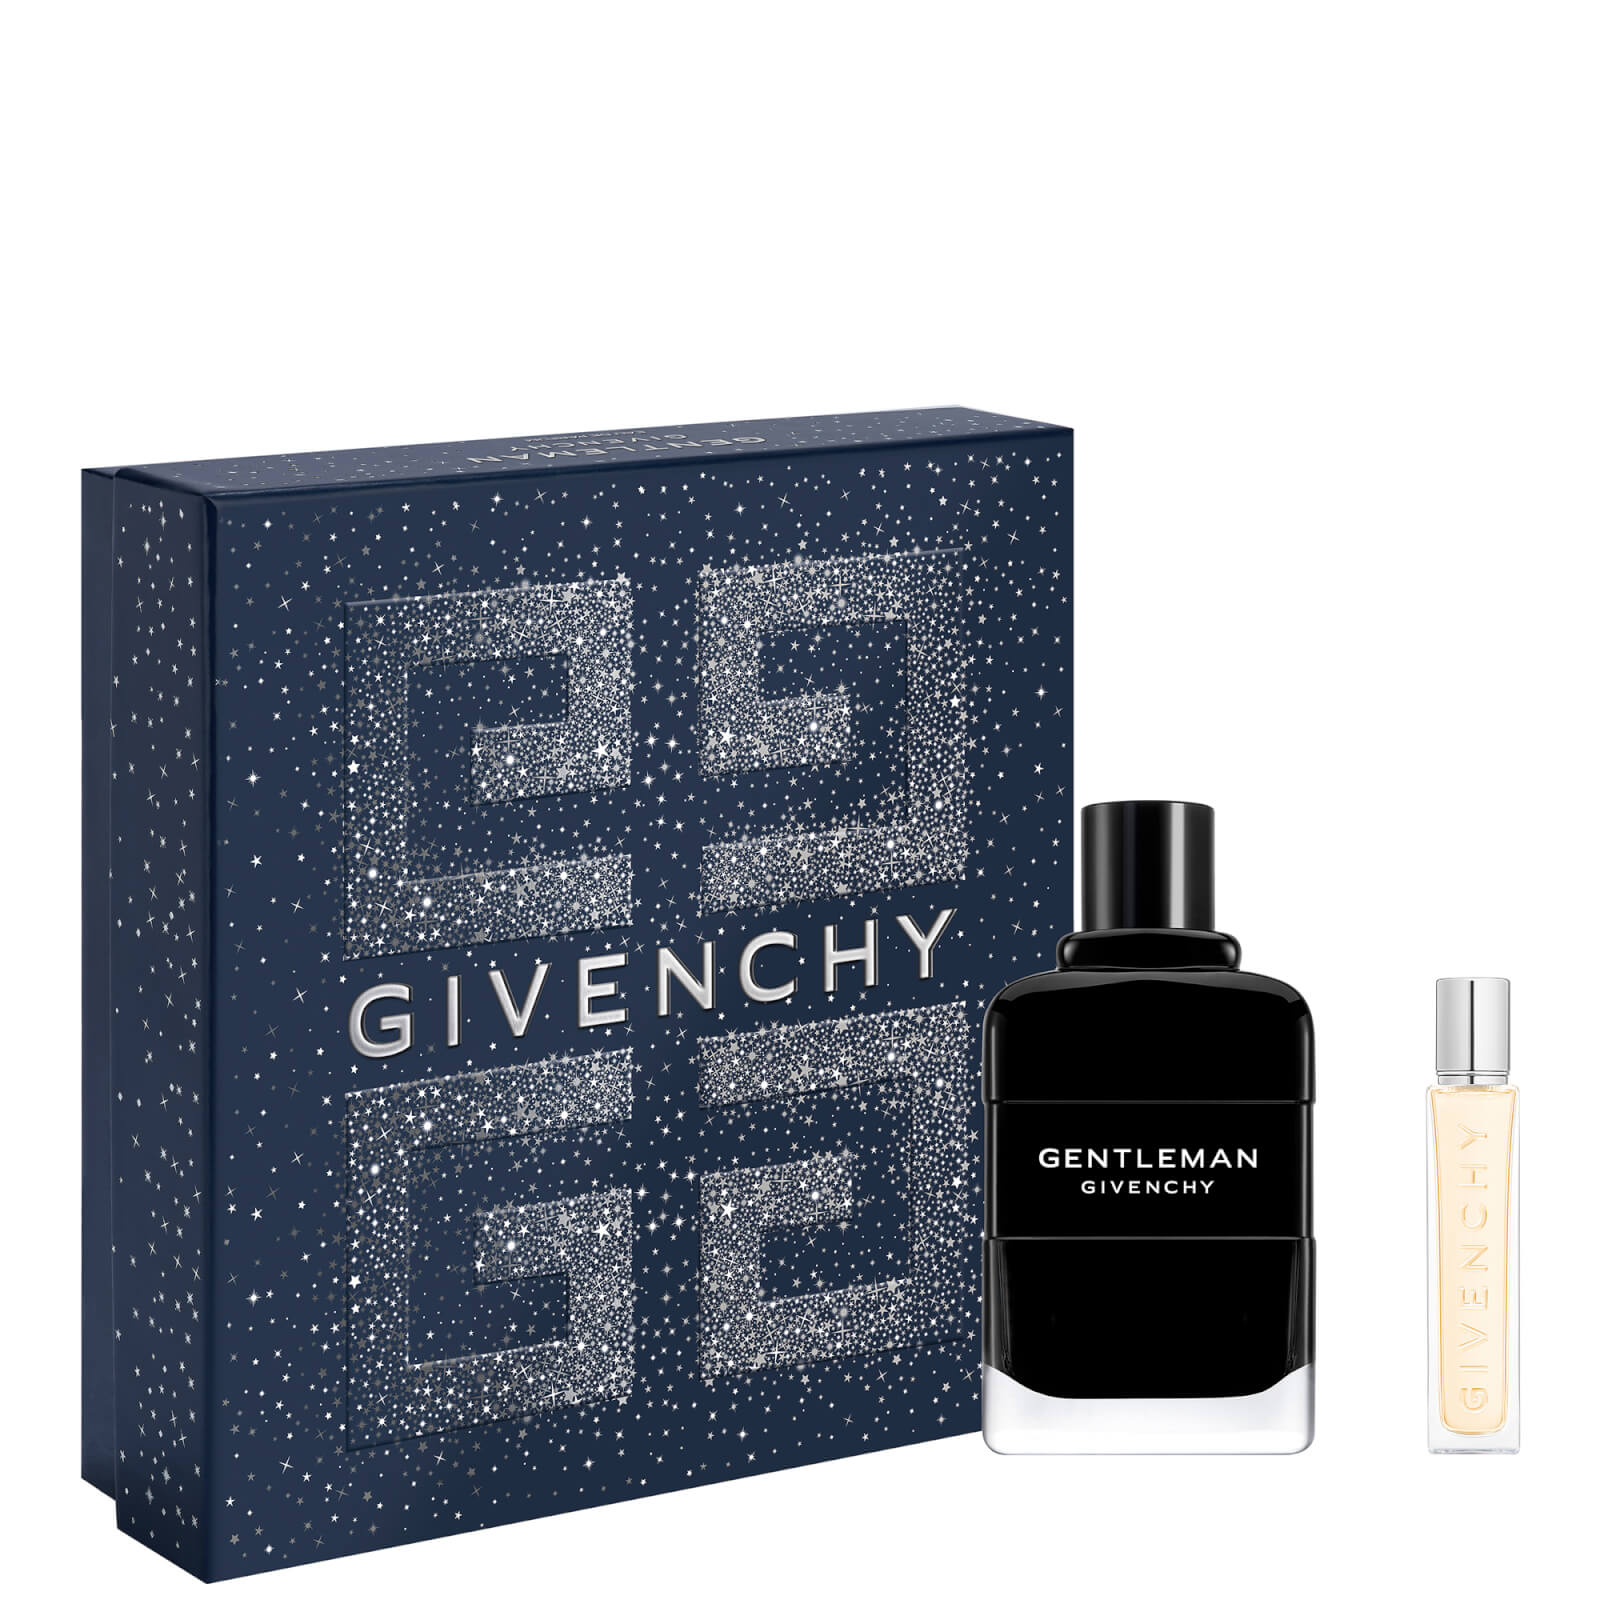 Givenchy Gentleman L'Interdit Eau de Parfum Boisee Christmas Gift Set